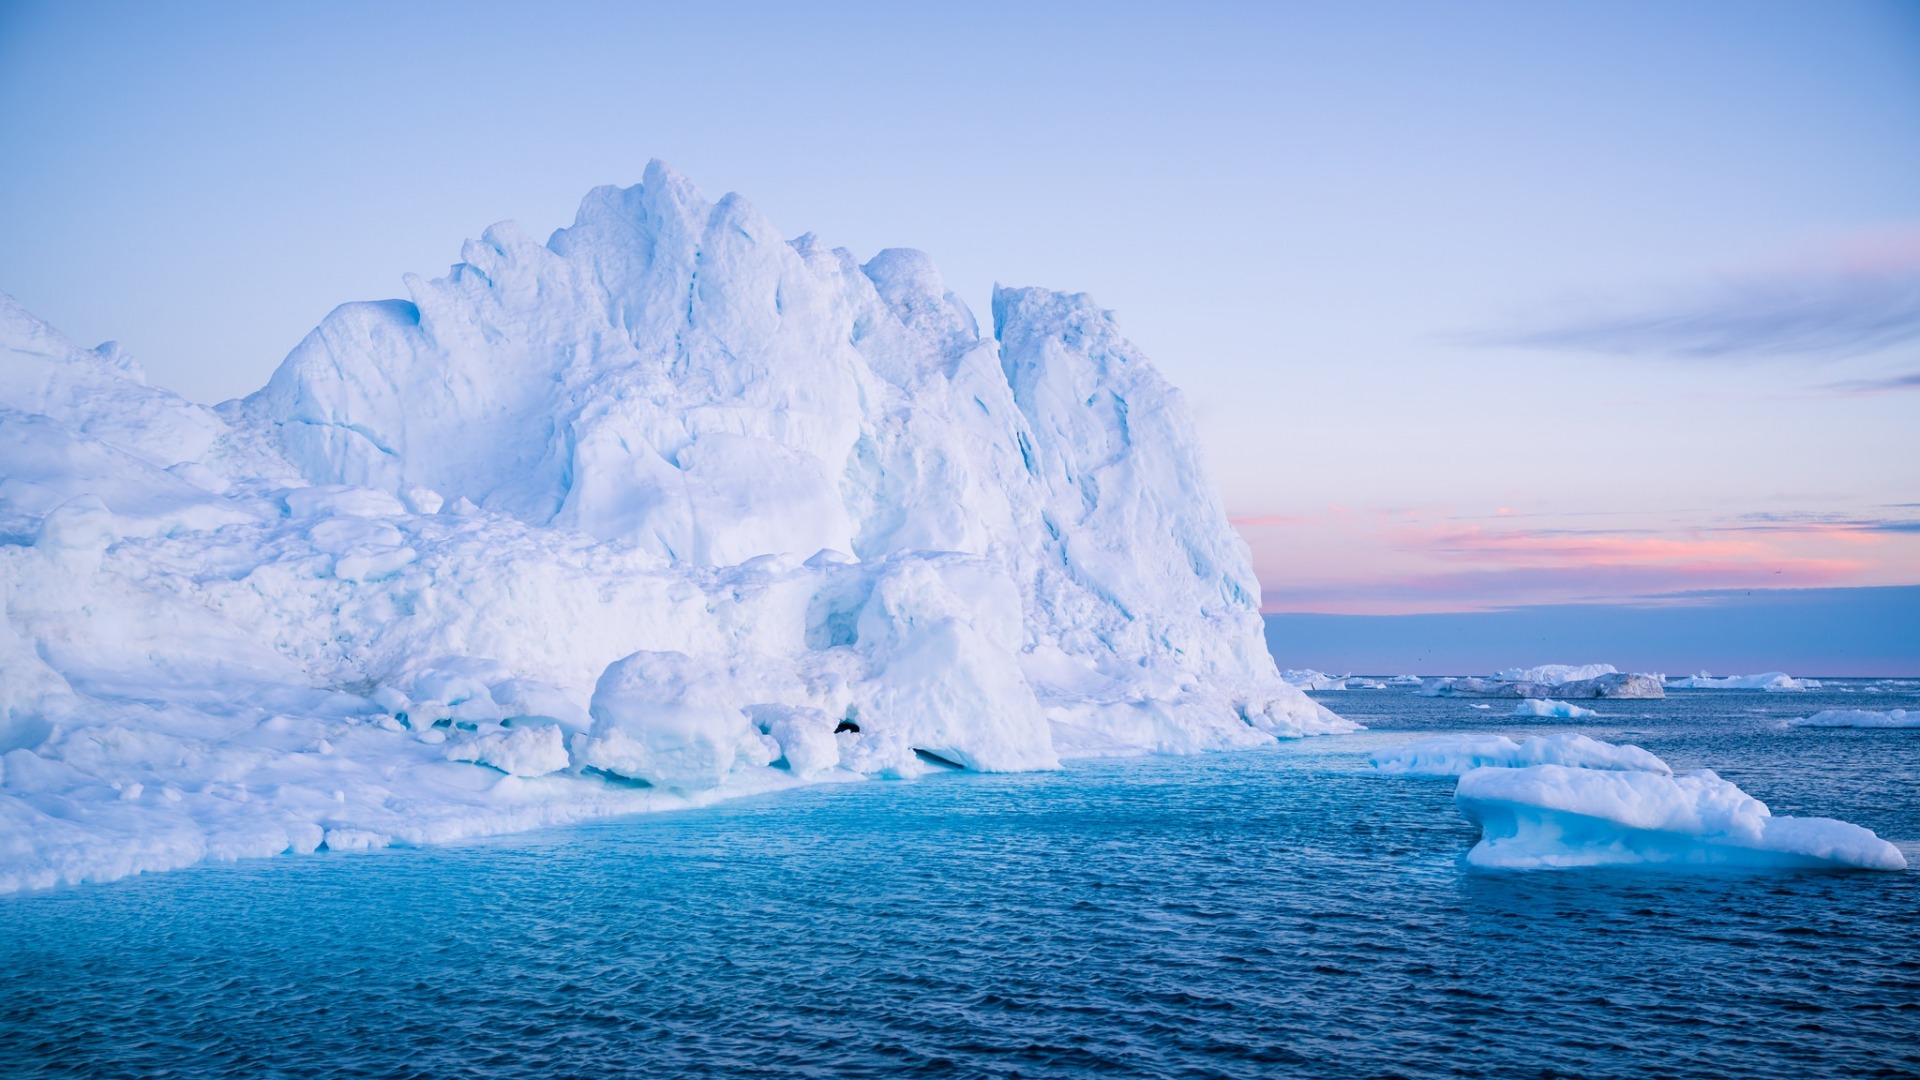 Скачать обои бесплатно Океан, Айсберг, Ландшафт, Лёд, Земля/природа, Арктический картинка на рабочий стол ПК